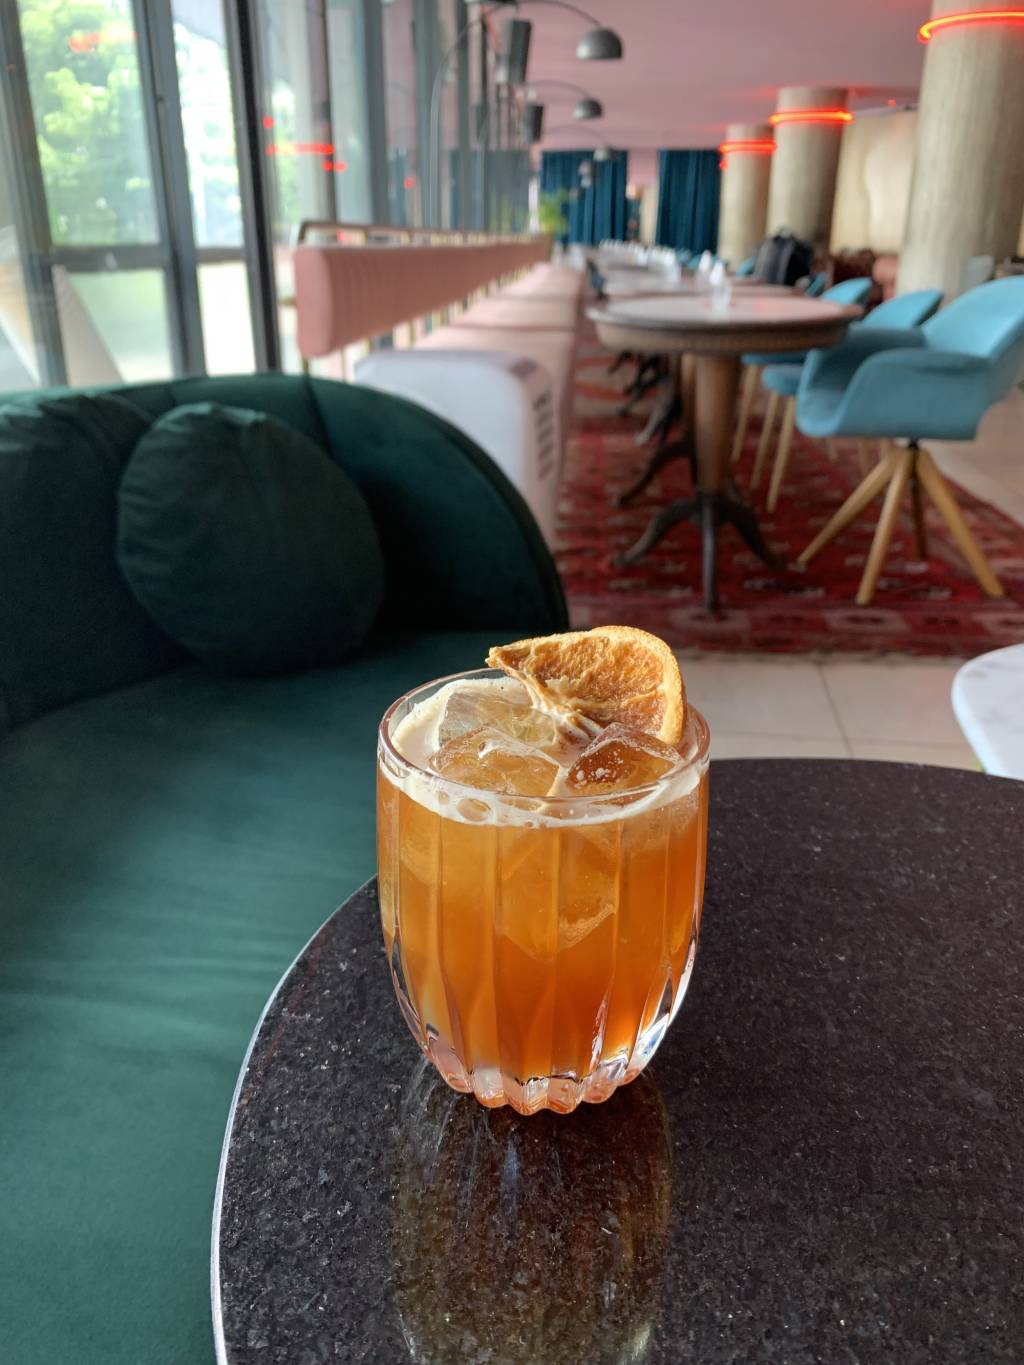 Foto de drinque de cor alaranjada servido em copo baixo decorado por um pedaço de laranja desidratada